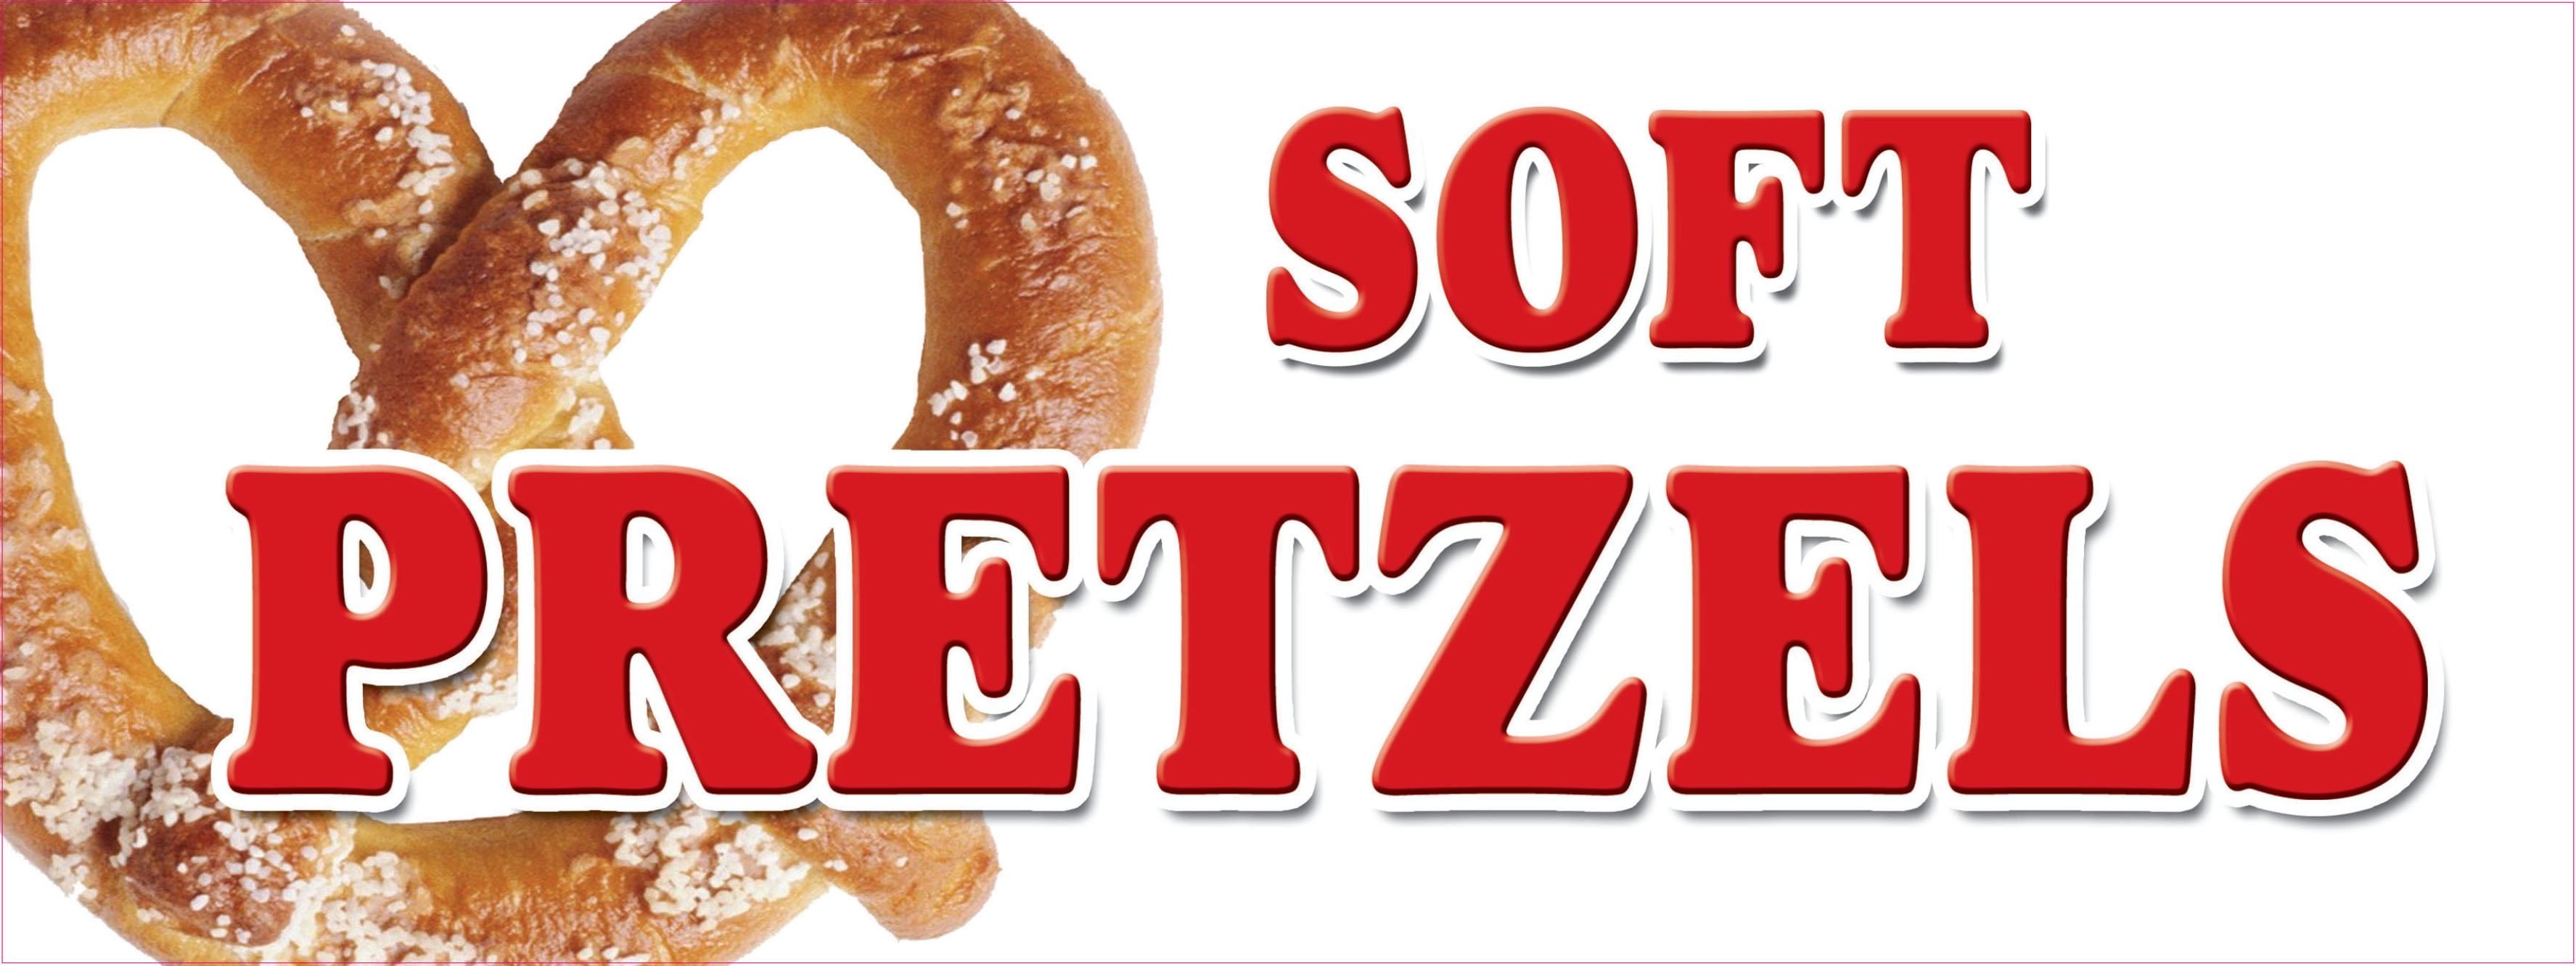 SOFT PRETZELS DECAL sticker pretzel stand cart supplies equipment ...